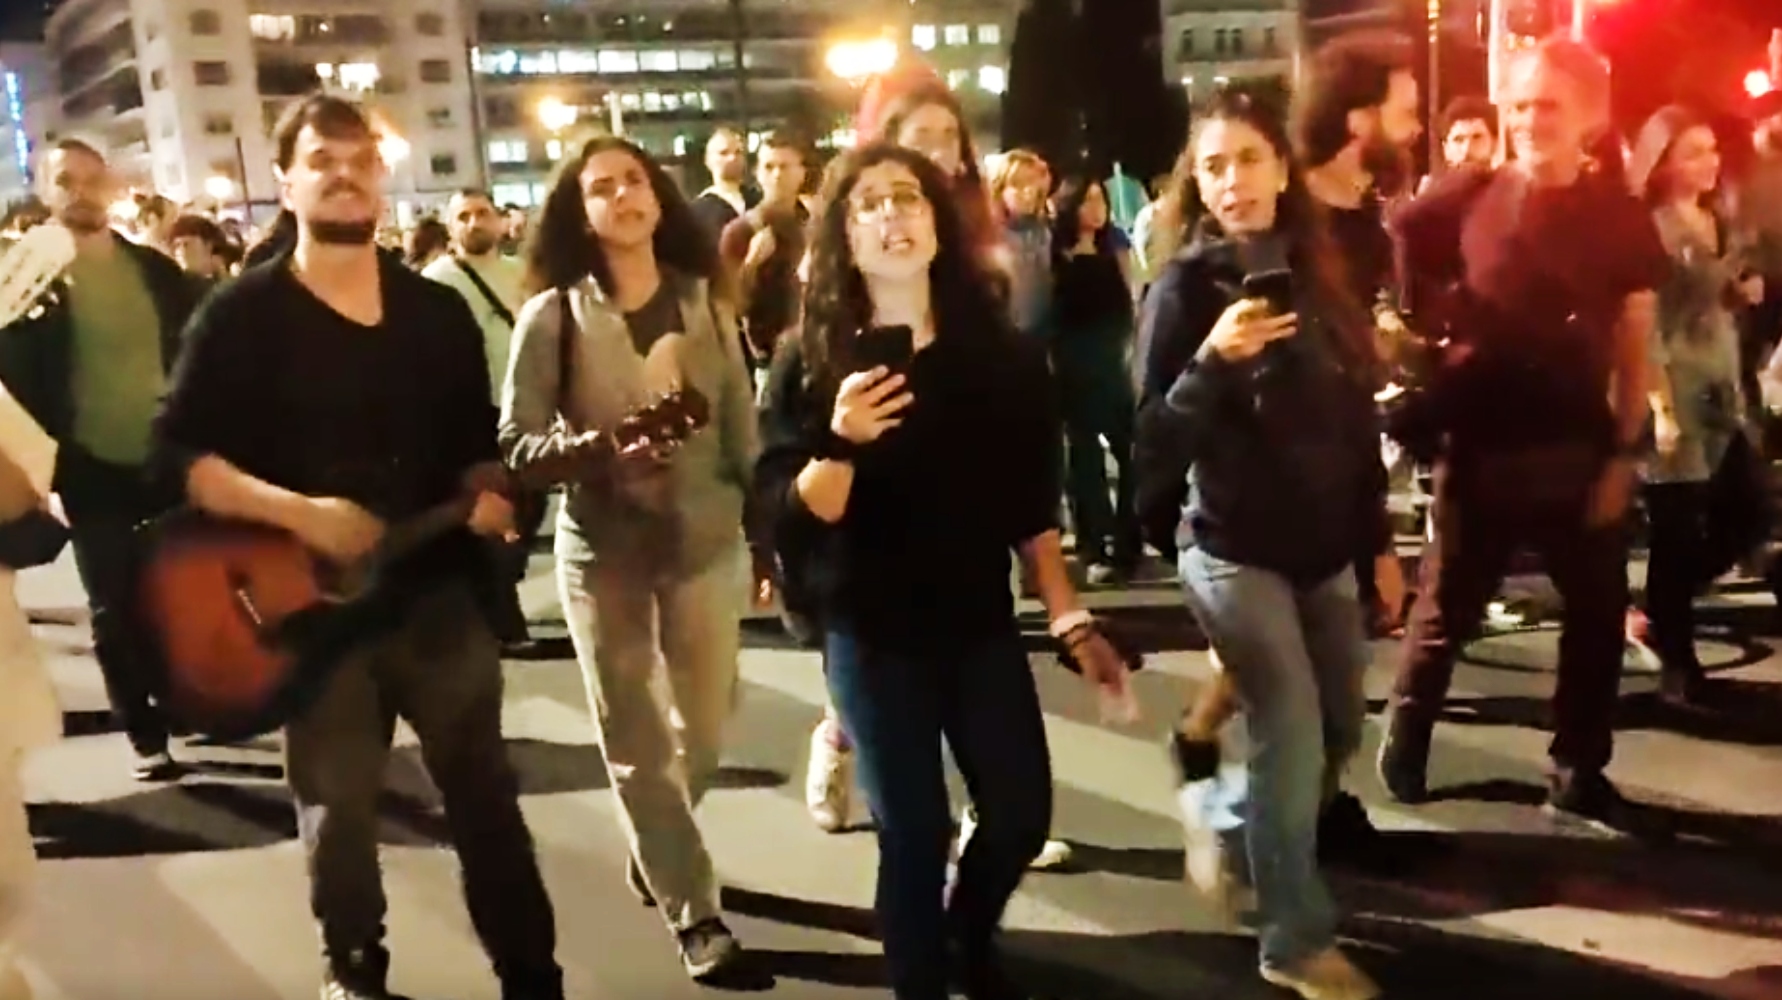 Διαδηλωτές τραγουδούν το συγκινητικό τραγούδι «Λύκου κραυγή» στην πορεία μνήμης του Ζακ (Video)